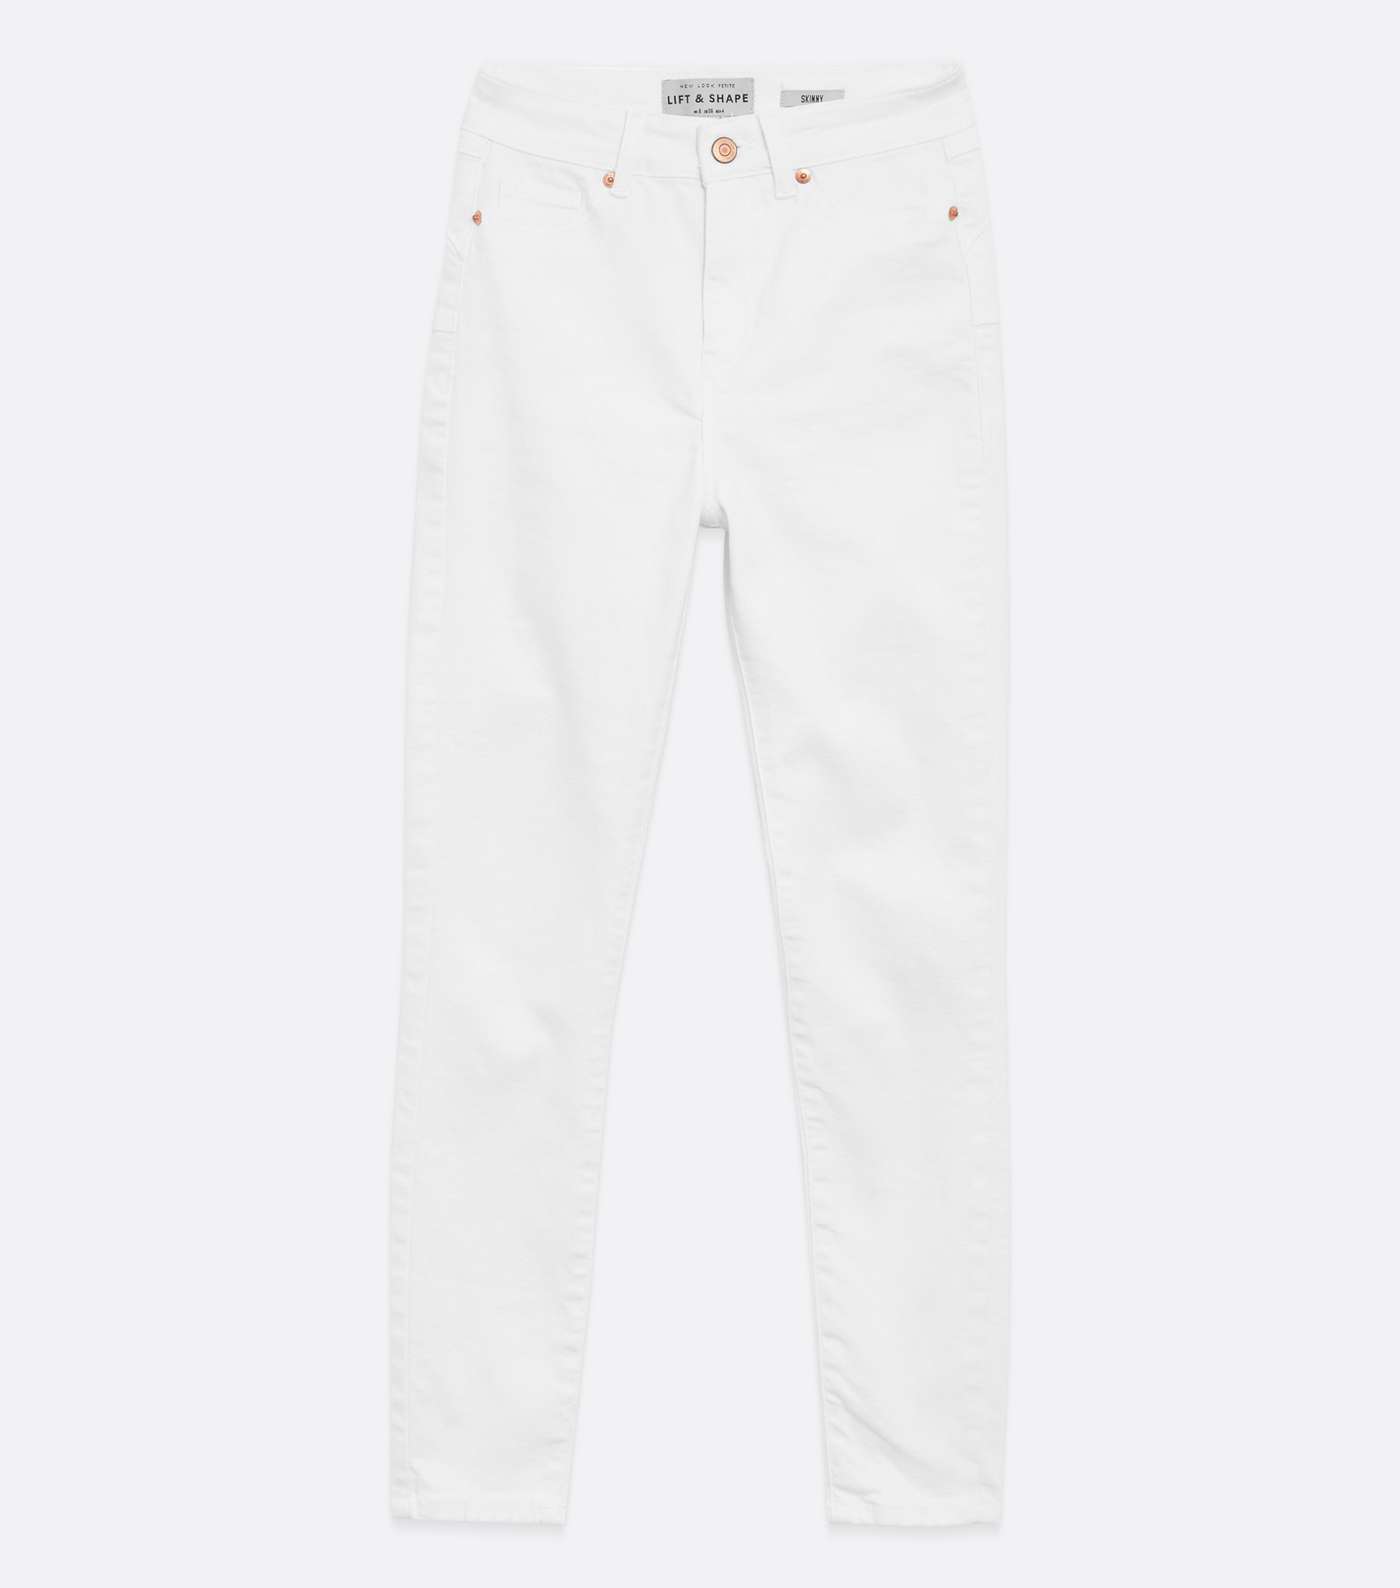 Petite White Lift & Shape Jenna Skinny Jeans Image 5